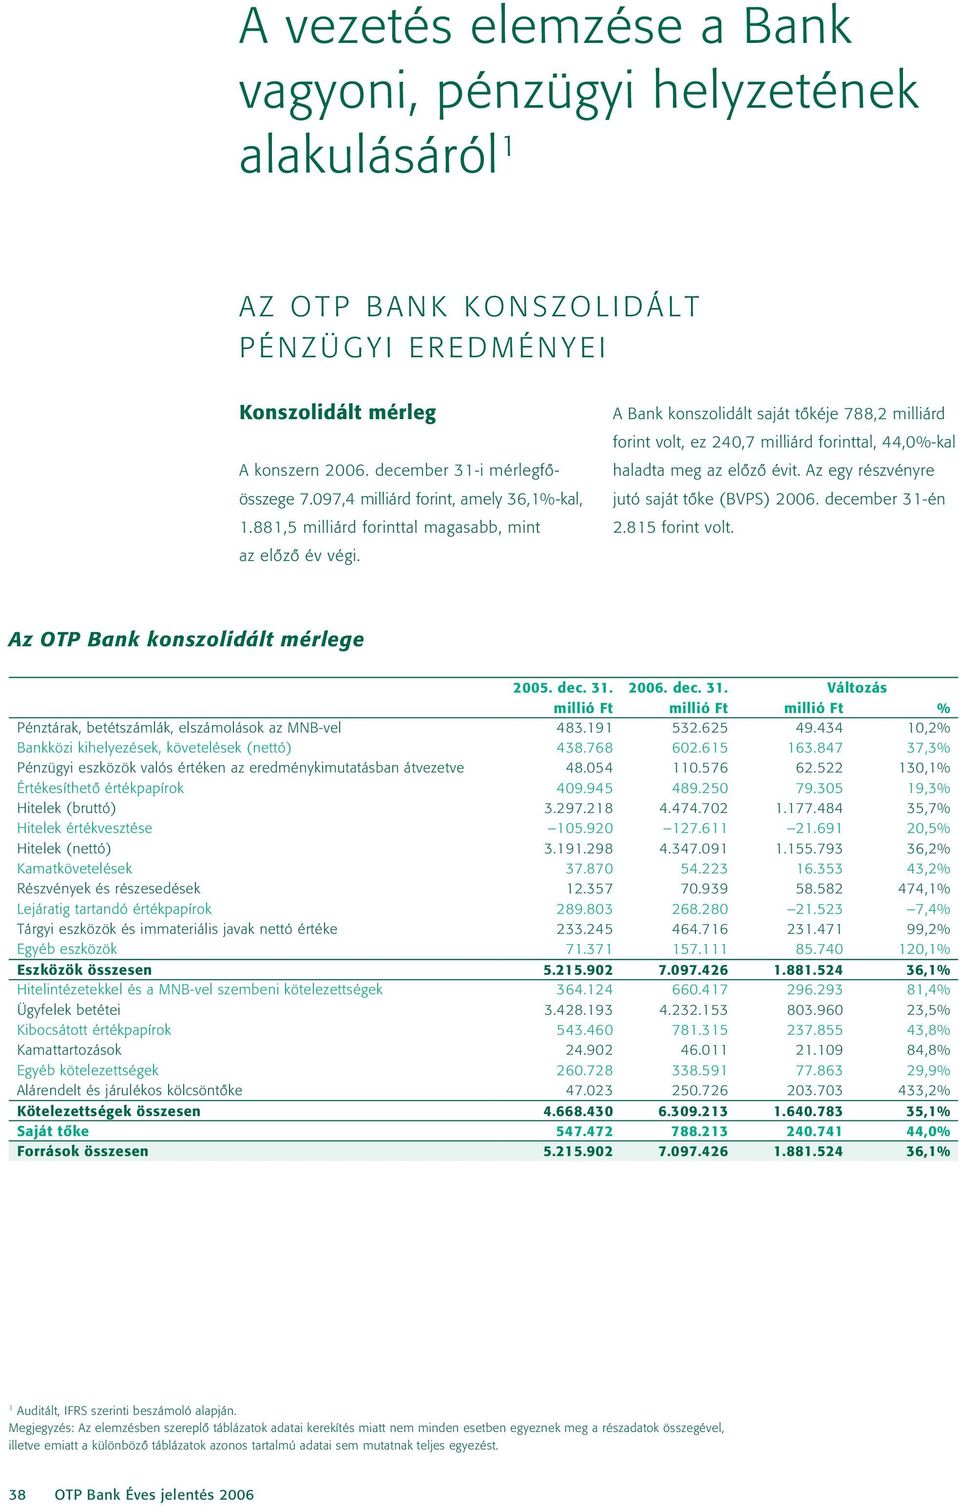 A Bank konszolidált saját tôkéje 788,2 milliárd forint volt, ez 240,7 milliárd forinttal, 44,0%-kal haladta meg az elôzô évit. Az egy részvényre jutó saját tôke (BVPS) 2006. december 31-én 2.